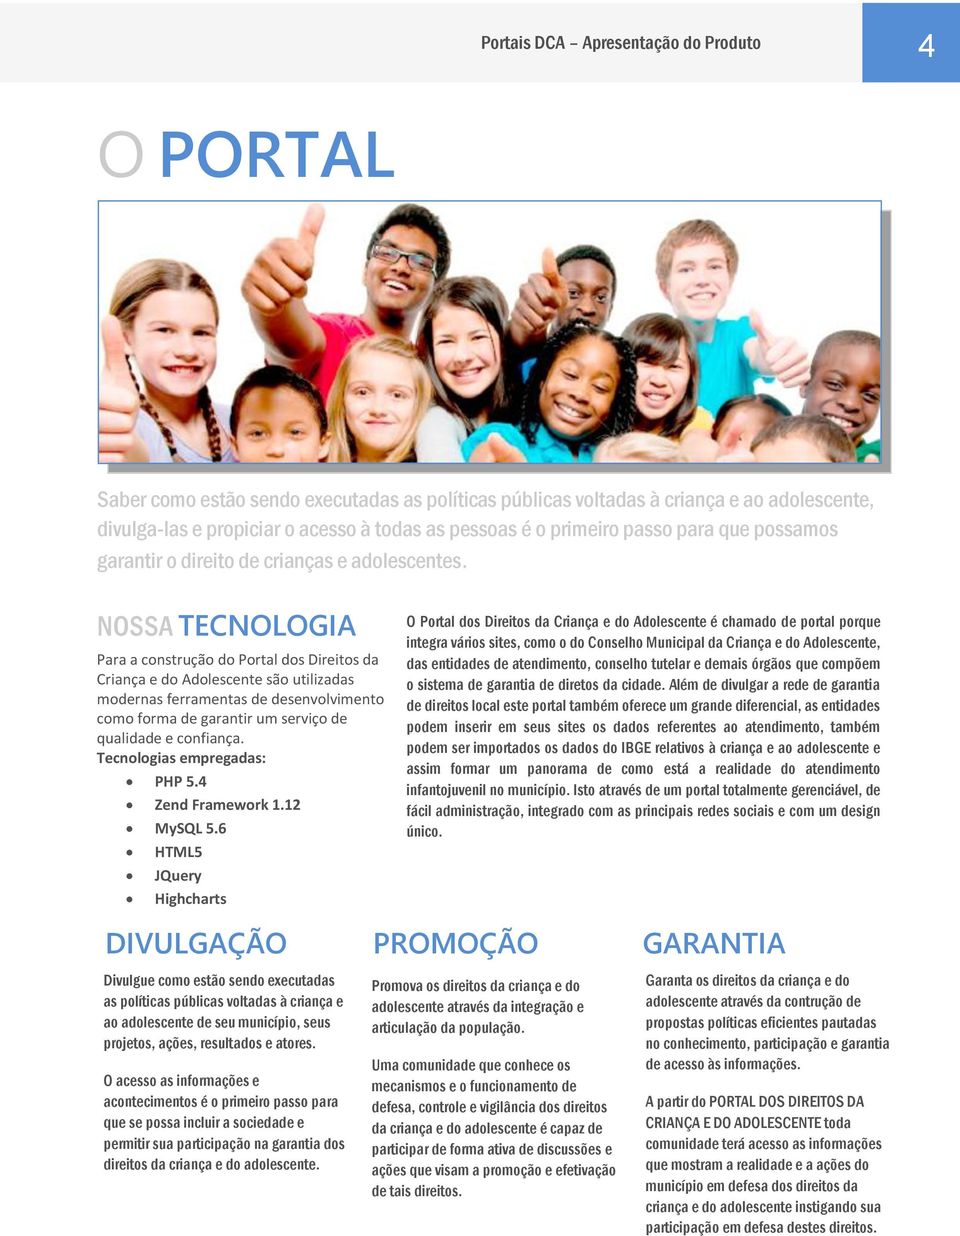 NOSSA TECNOLOGIA Para a construção do Portal dos Direitos da Criança e do Adolescente são utilizadas modernas ferramentas de desenvolvimento como forma de garantir um serviço de qualidade e confiança.